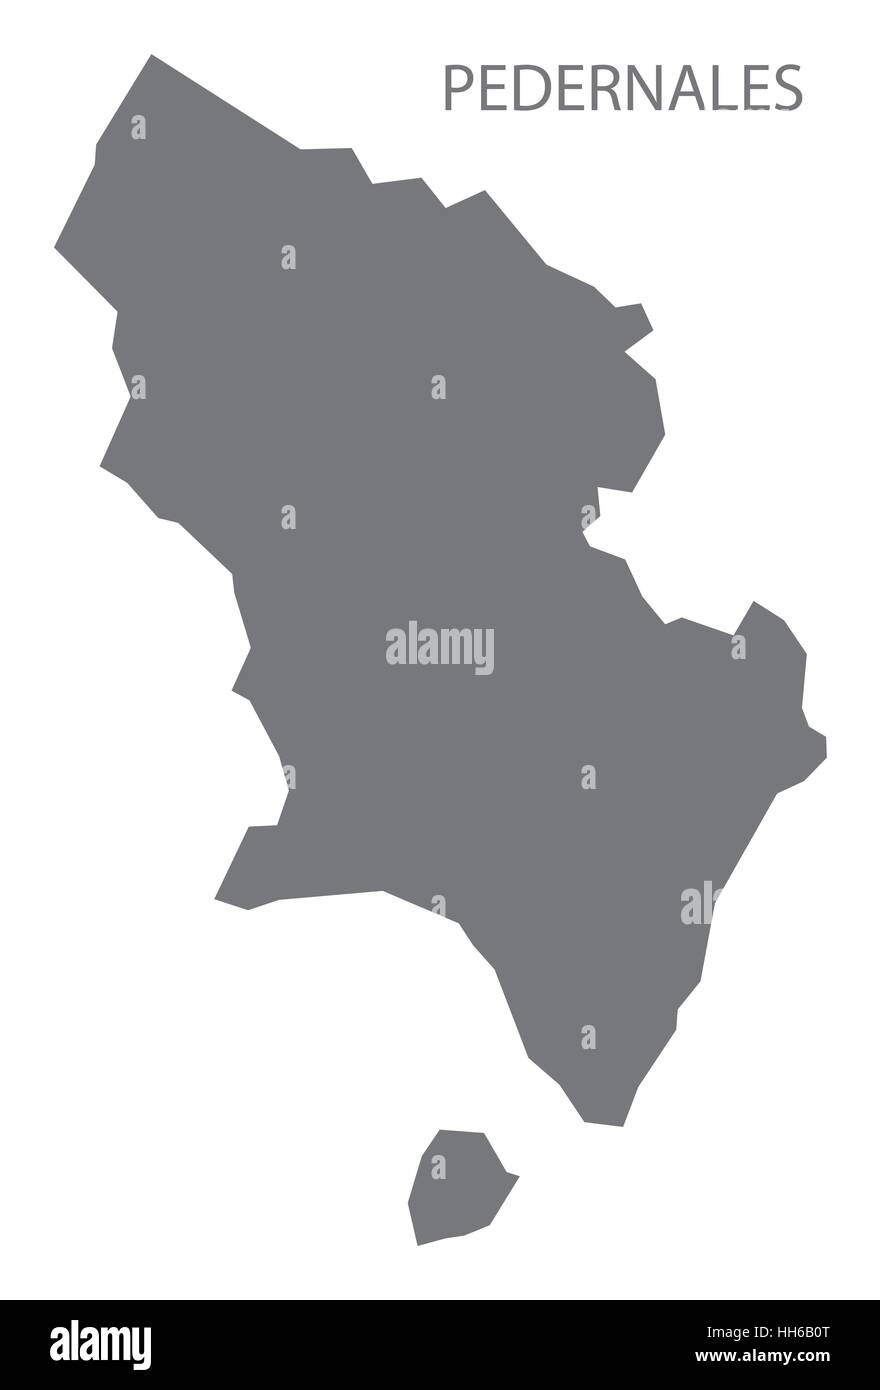 Pedernales Repubblica Dominicana mappa in grigio Illustrazione Vettoriale